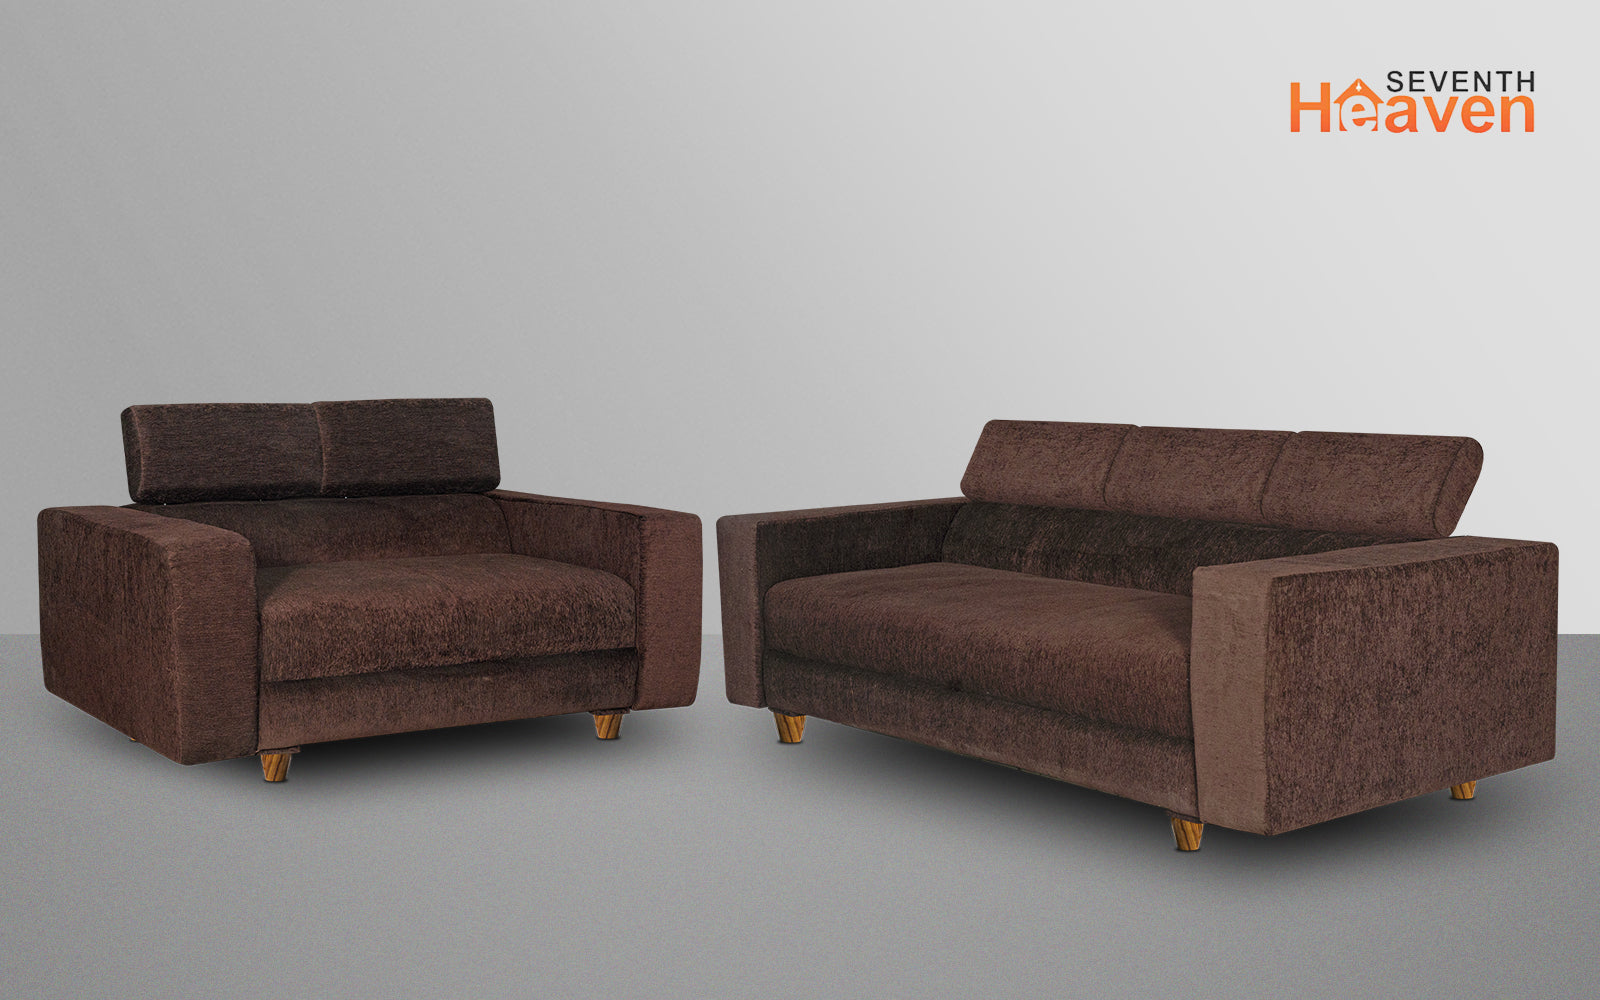 Berlin 5 Seater Sofa Set, Chenille Molfino Fabric (Finish Color - Brown, Style - 3 + 2)